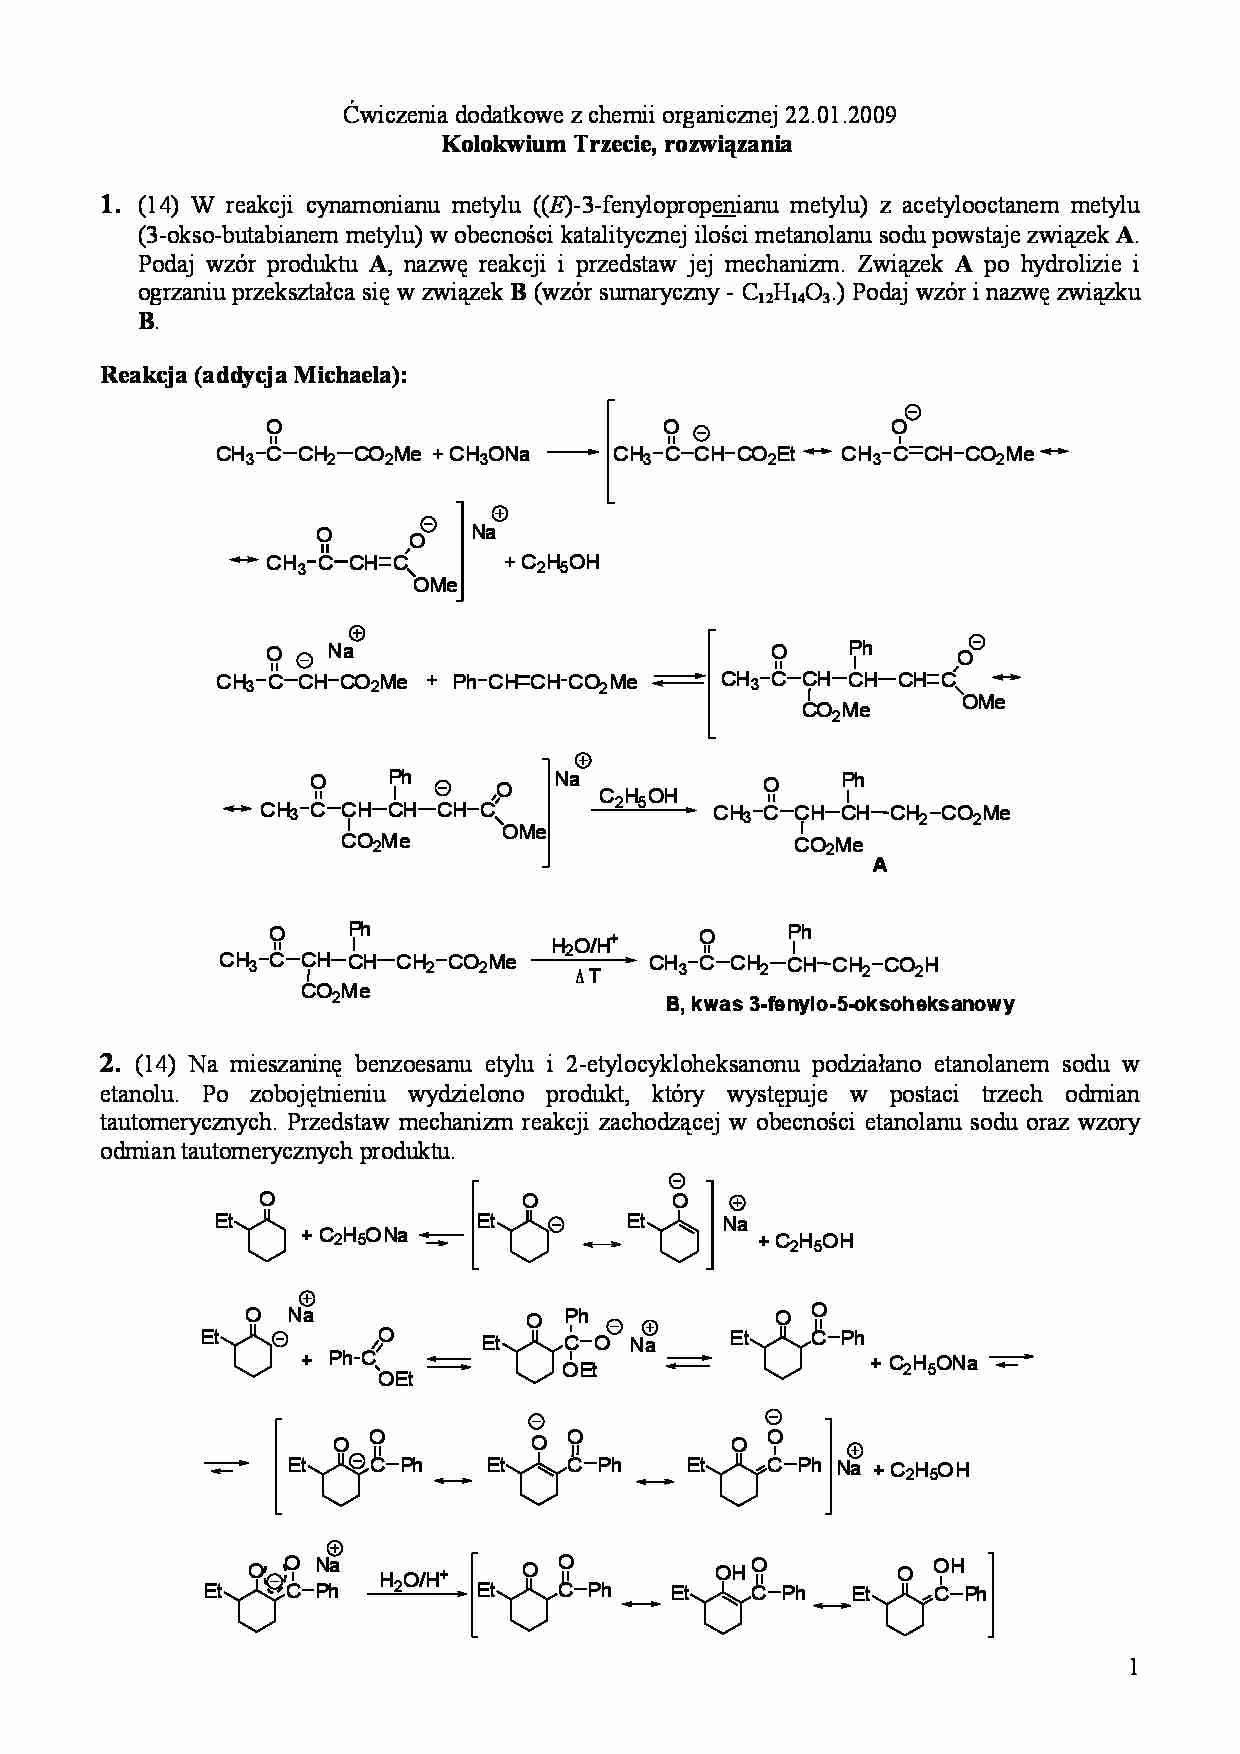   Ćwiczenia dodatkowe z chemii organicznej - addycja Michaela - strona 1